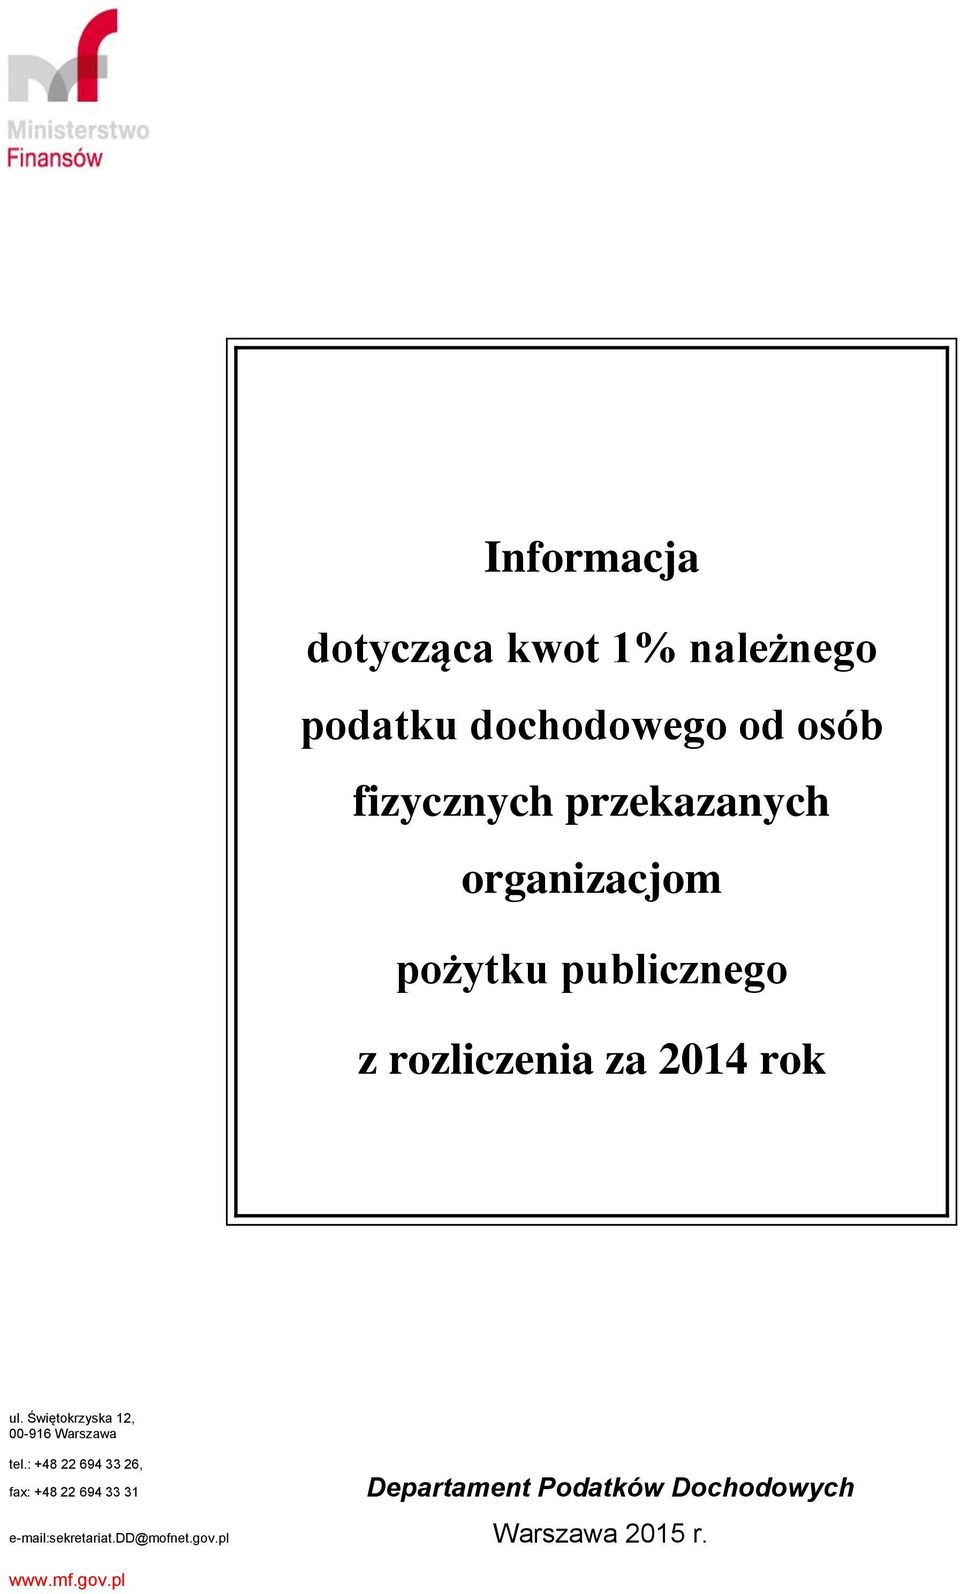 Świętokrzyska 12, 00-916 Warszawa tel.